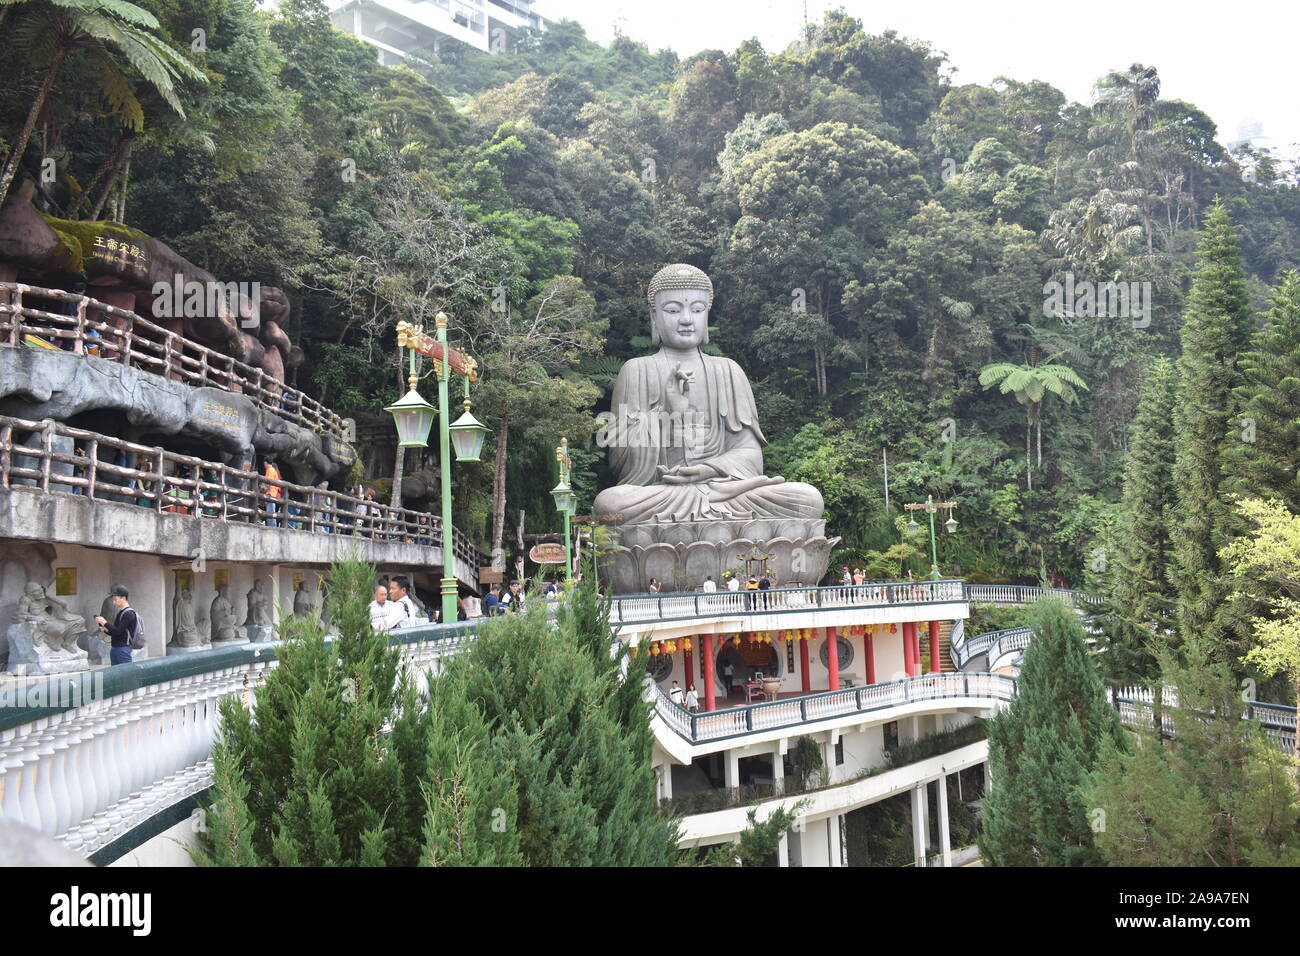 Une gigantesque statue en pierre de Bouddha avec arbres tropicaux dans l'arrière-plan à Genting Highlands Malaisie Banque D'Images